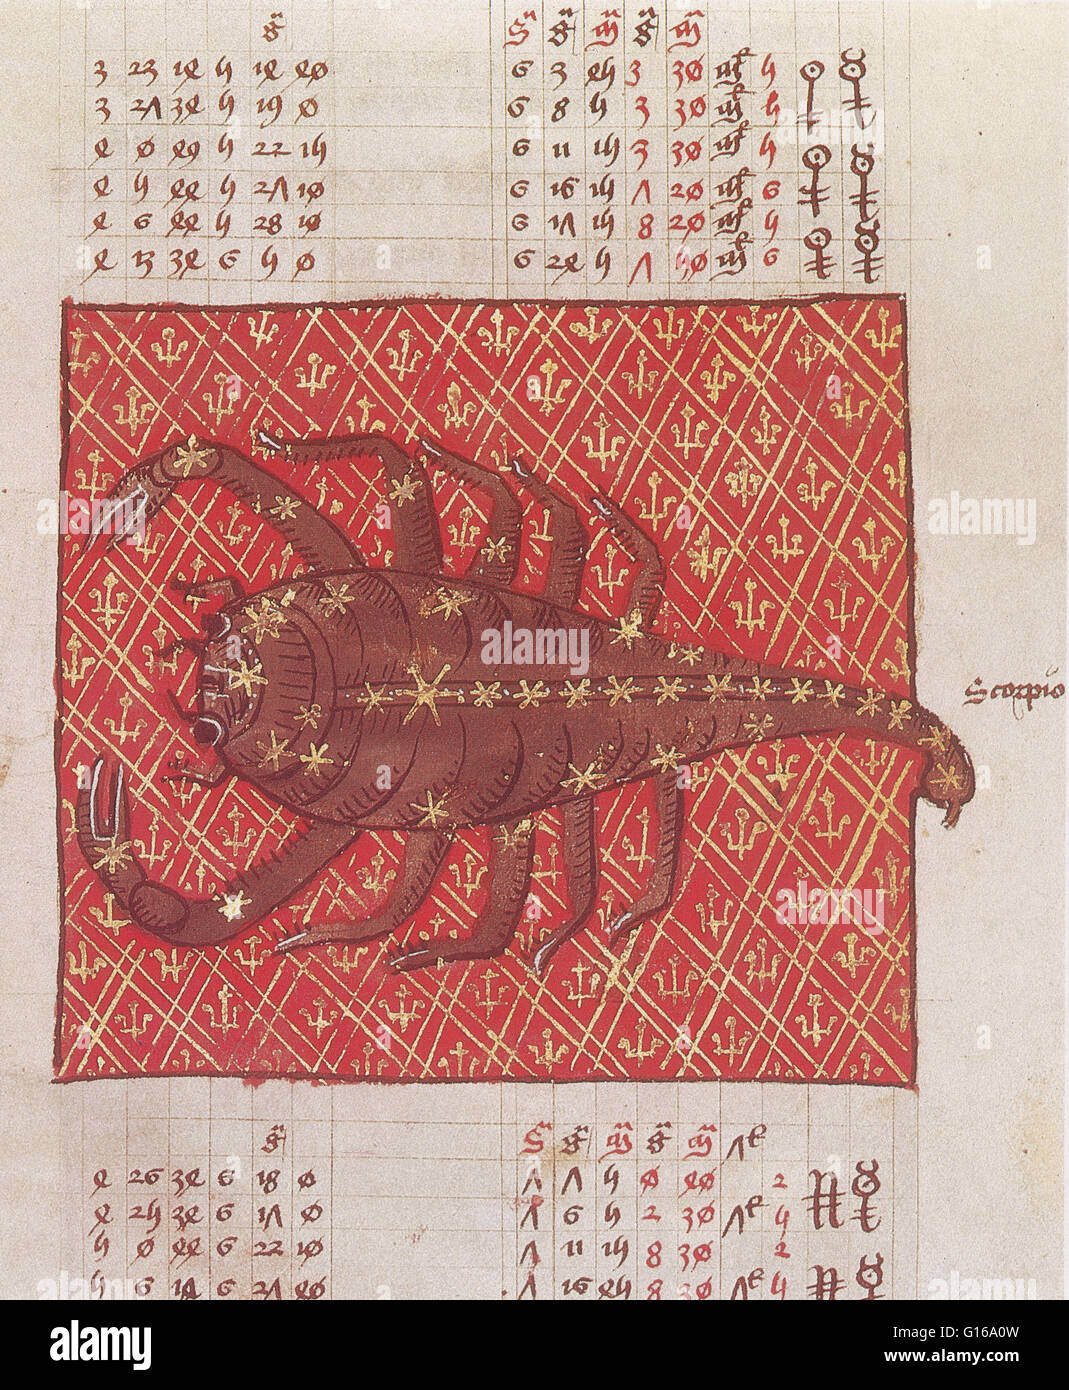 Sternbild Skorpion. Ptolemäus Star Catalogue, aus einer spätlateinischen Version des Almagest, 1490. Scorpius, manchmal bekannt als Skorpion, ist eines der Sternbilder des Tierkreises. Sein Name ist lateinisch für Scorpion. Es ist eines der 48 Sternbilder hmm Stockfoto